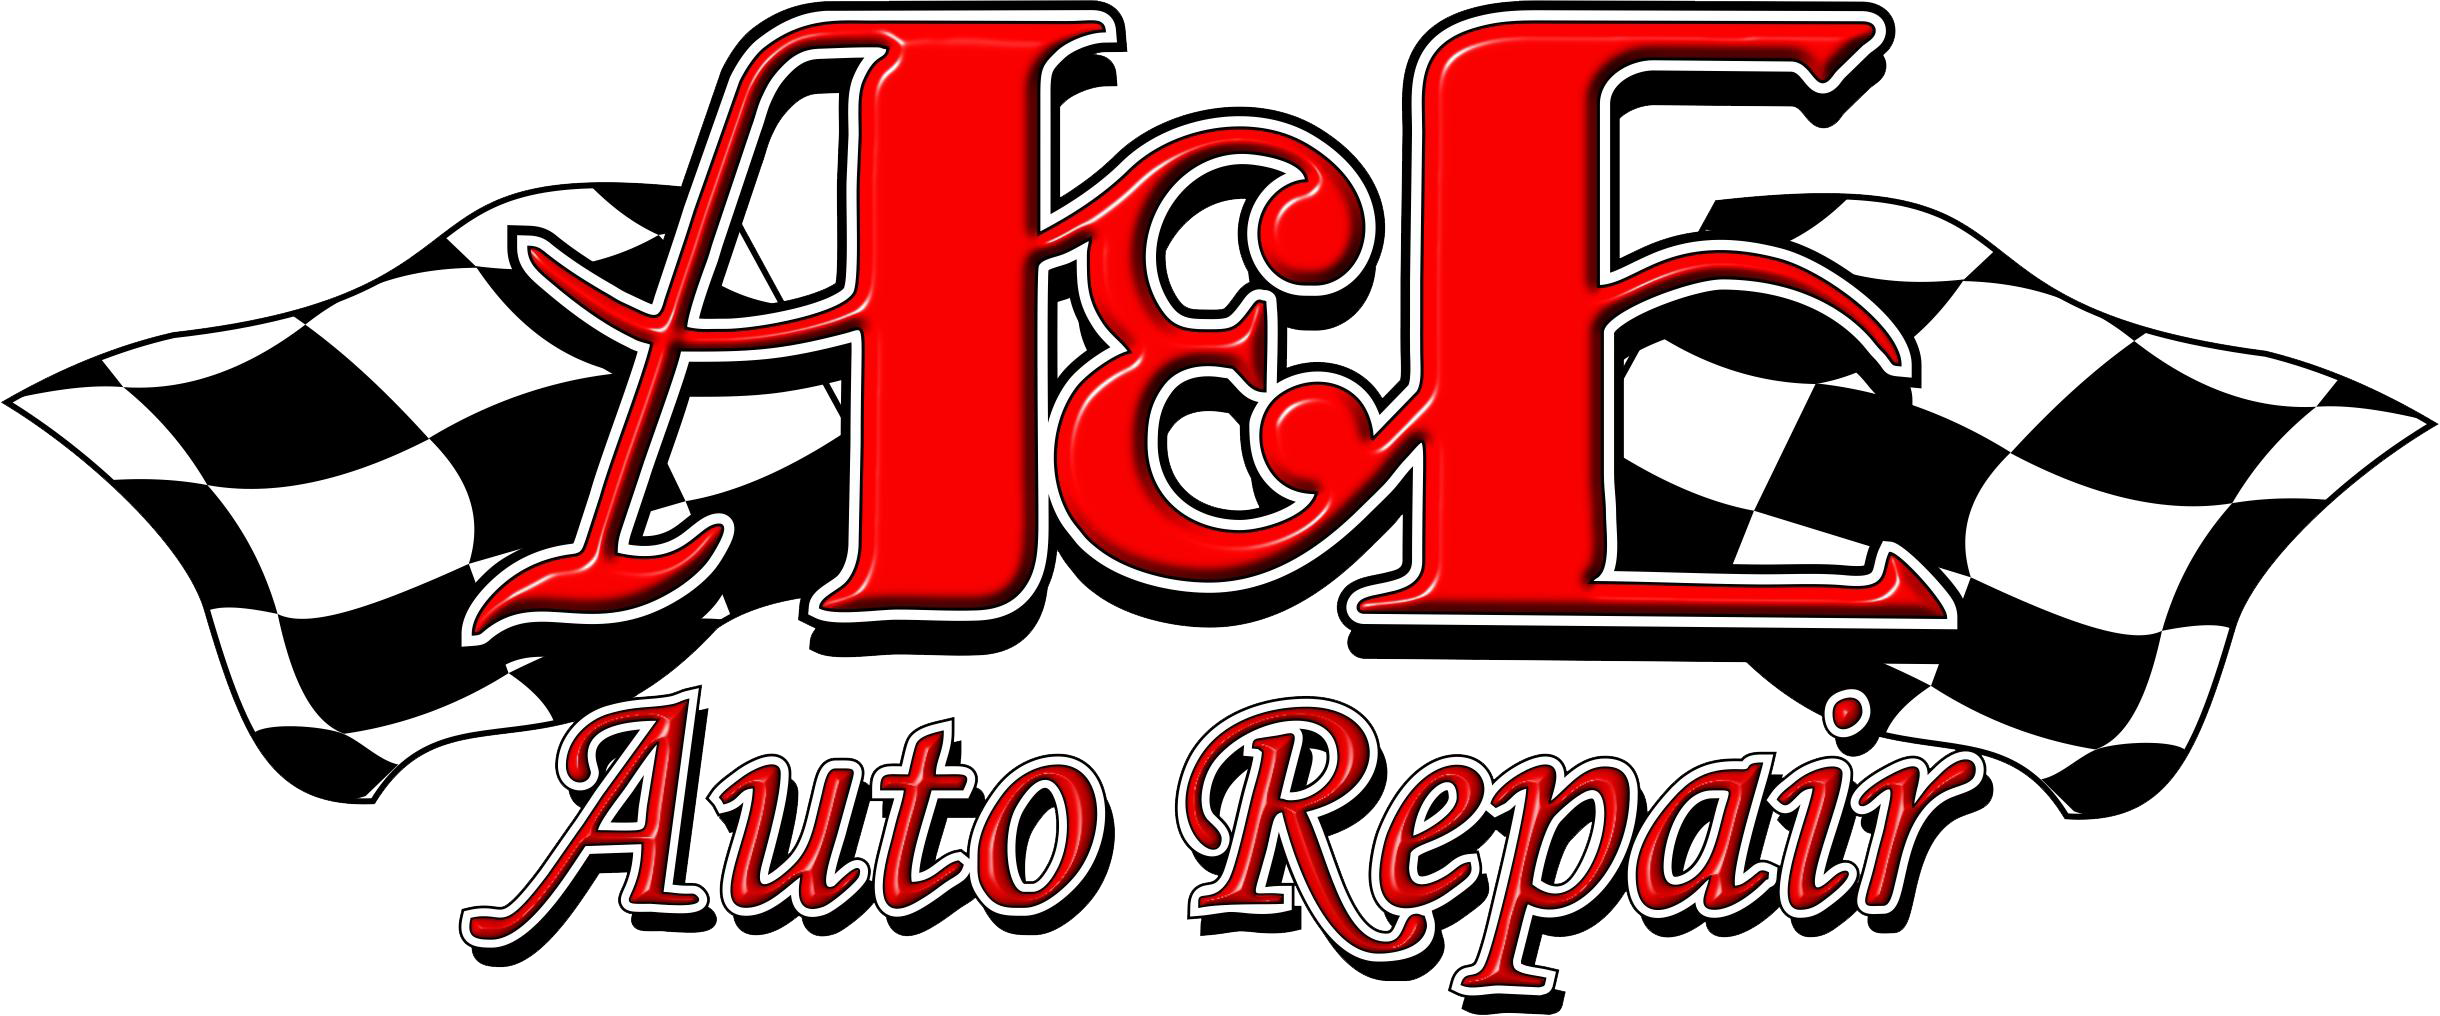 Logo Logo - A & E Auto Repair (2440x1016), Png Download